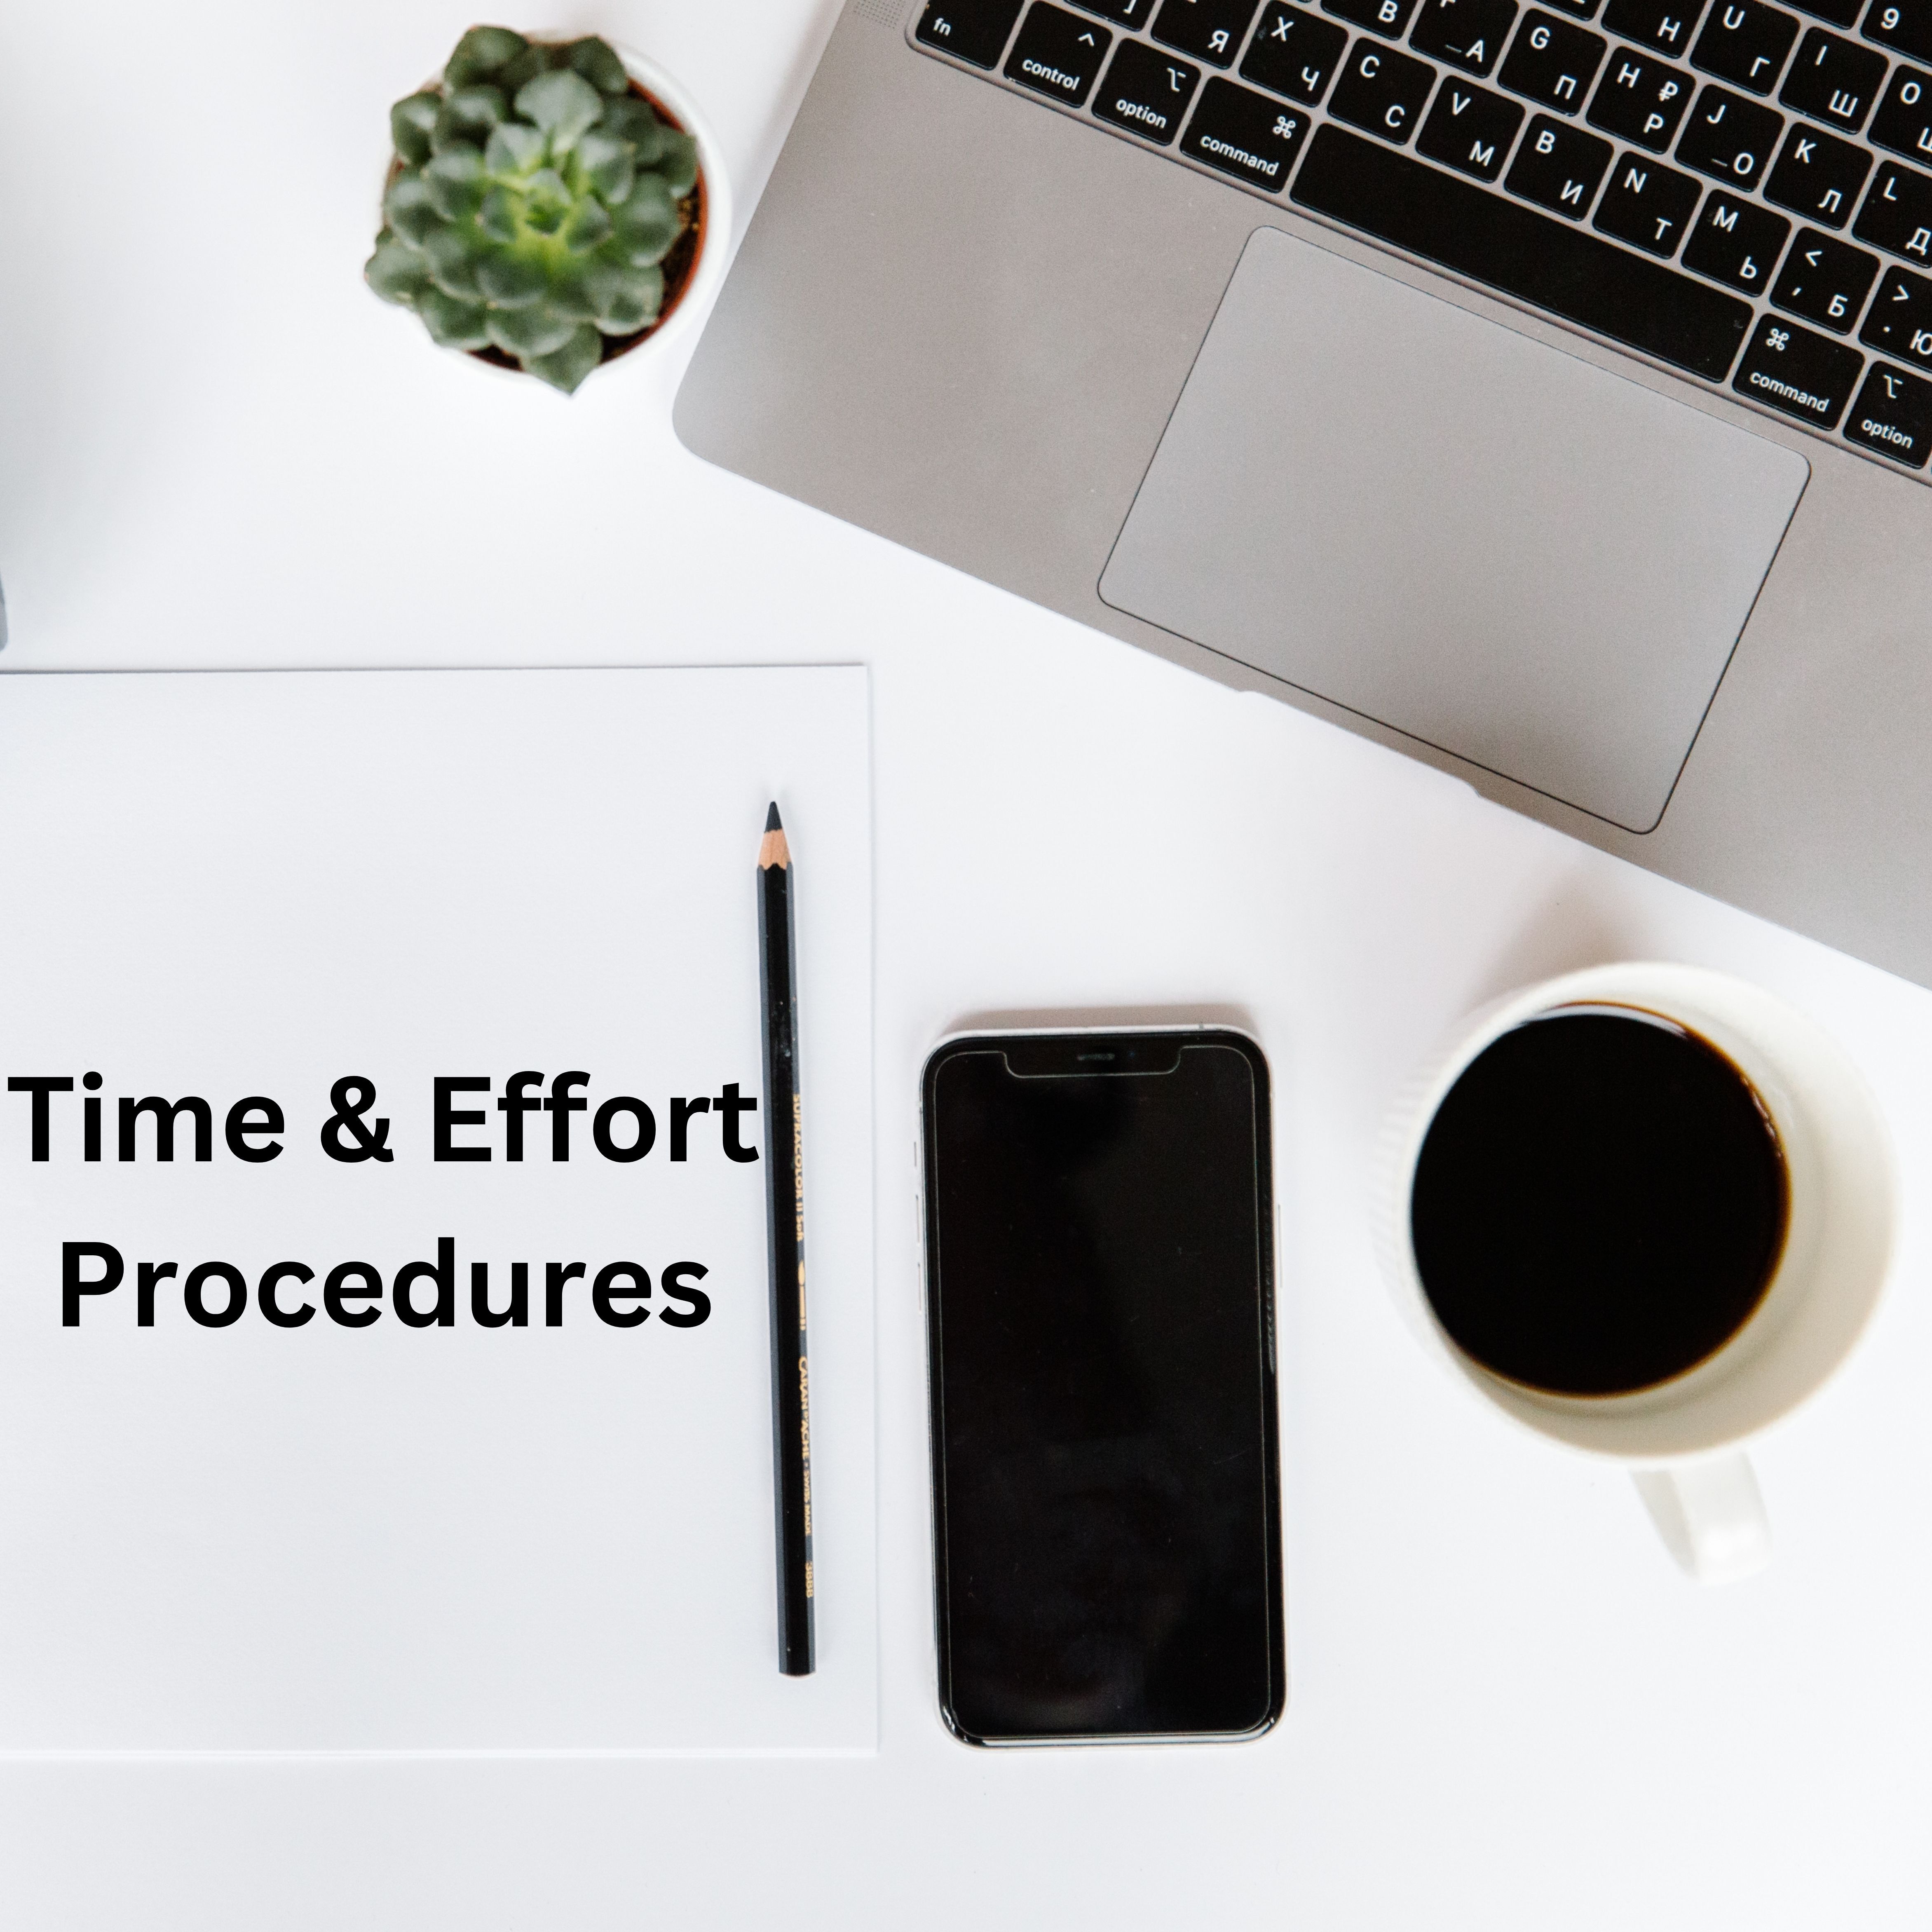 Time & Effort Procedures